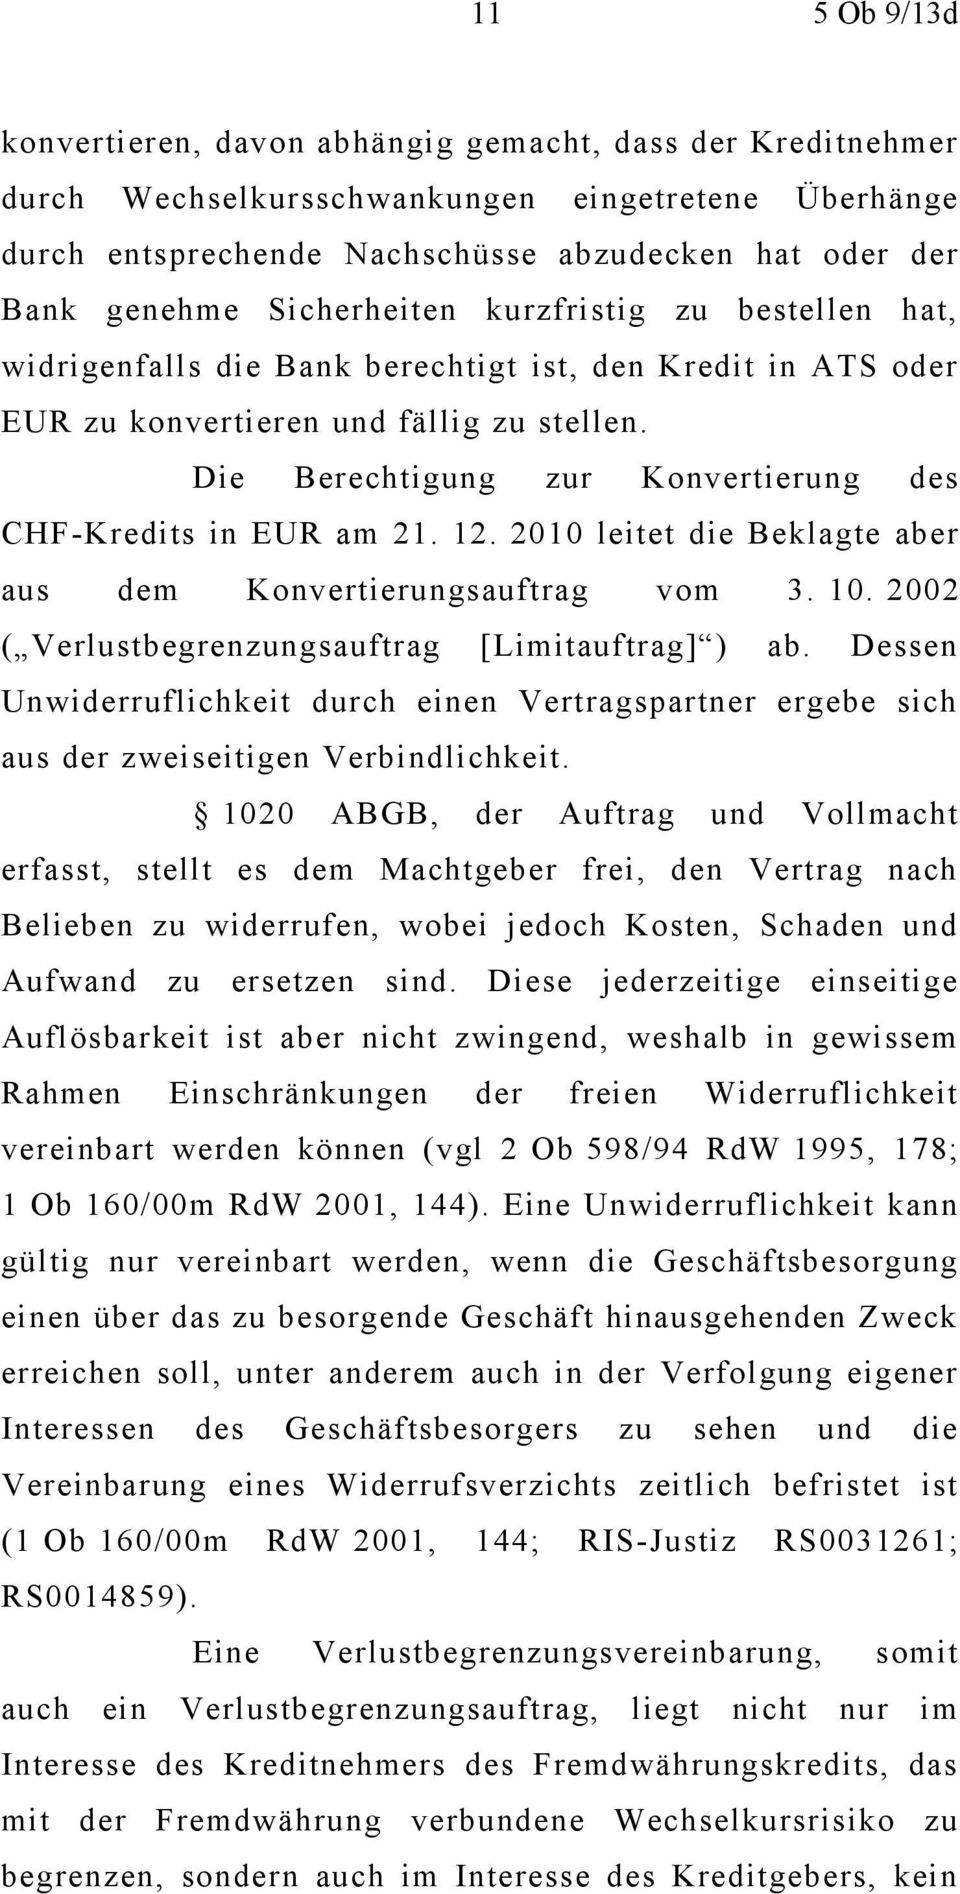 Die Berechtigung zur Konvertierung des CHF-Kredits in EUR am 21. 12. 2010 leitet die Beklagte aber aus dem Konvertierungsauftrag vom 3. 10. 2002 ( Verlustbegrenzungsauftrag [Limitauftrag] ) ab.